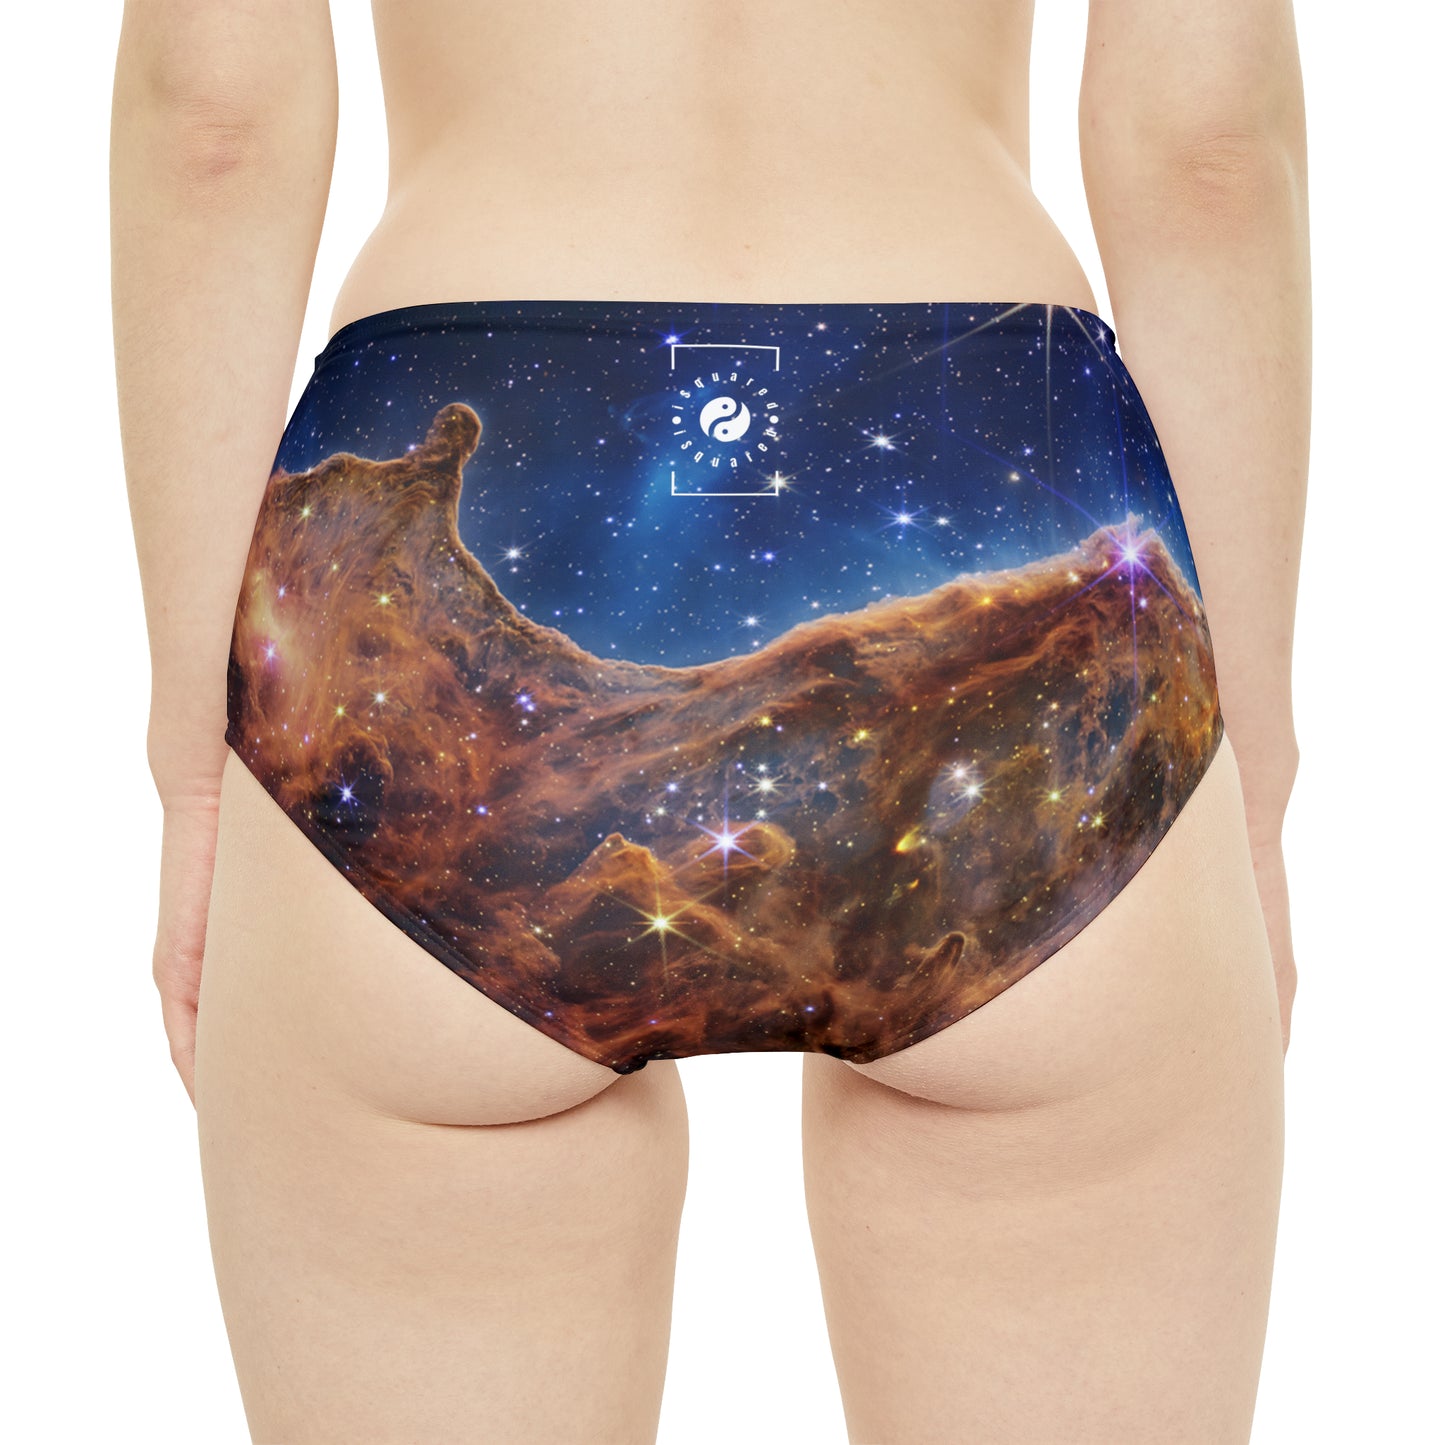 “Cosmic Cliffs” in the Carina Nebula (NIRCam Image) - JWST Collection - High Waisted Bikini Bottom